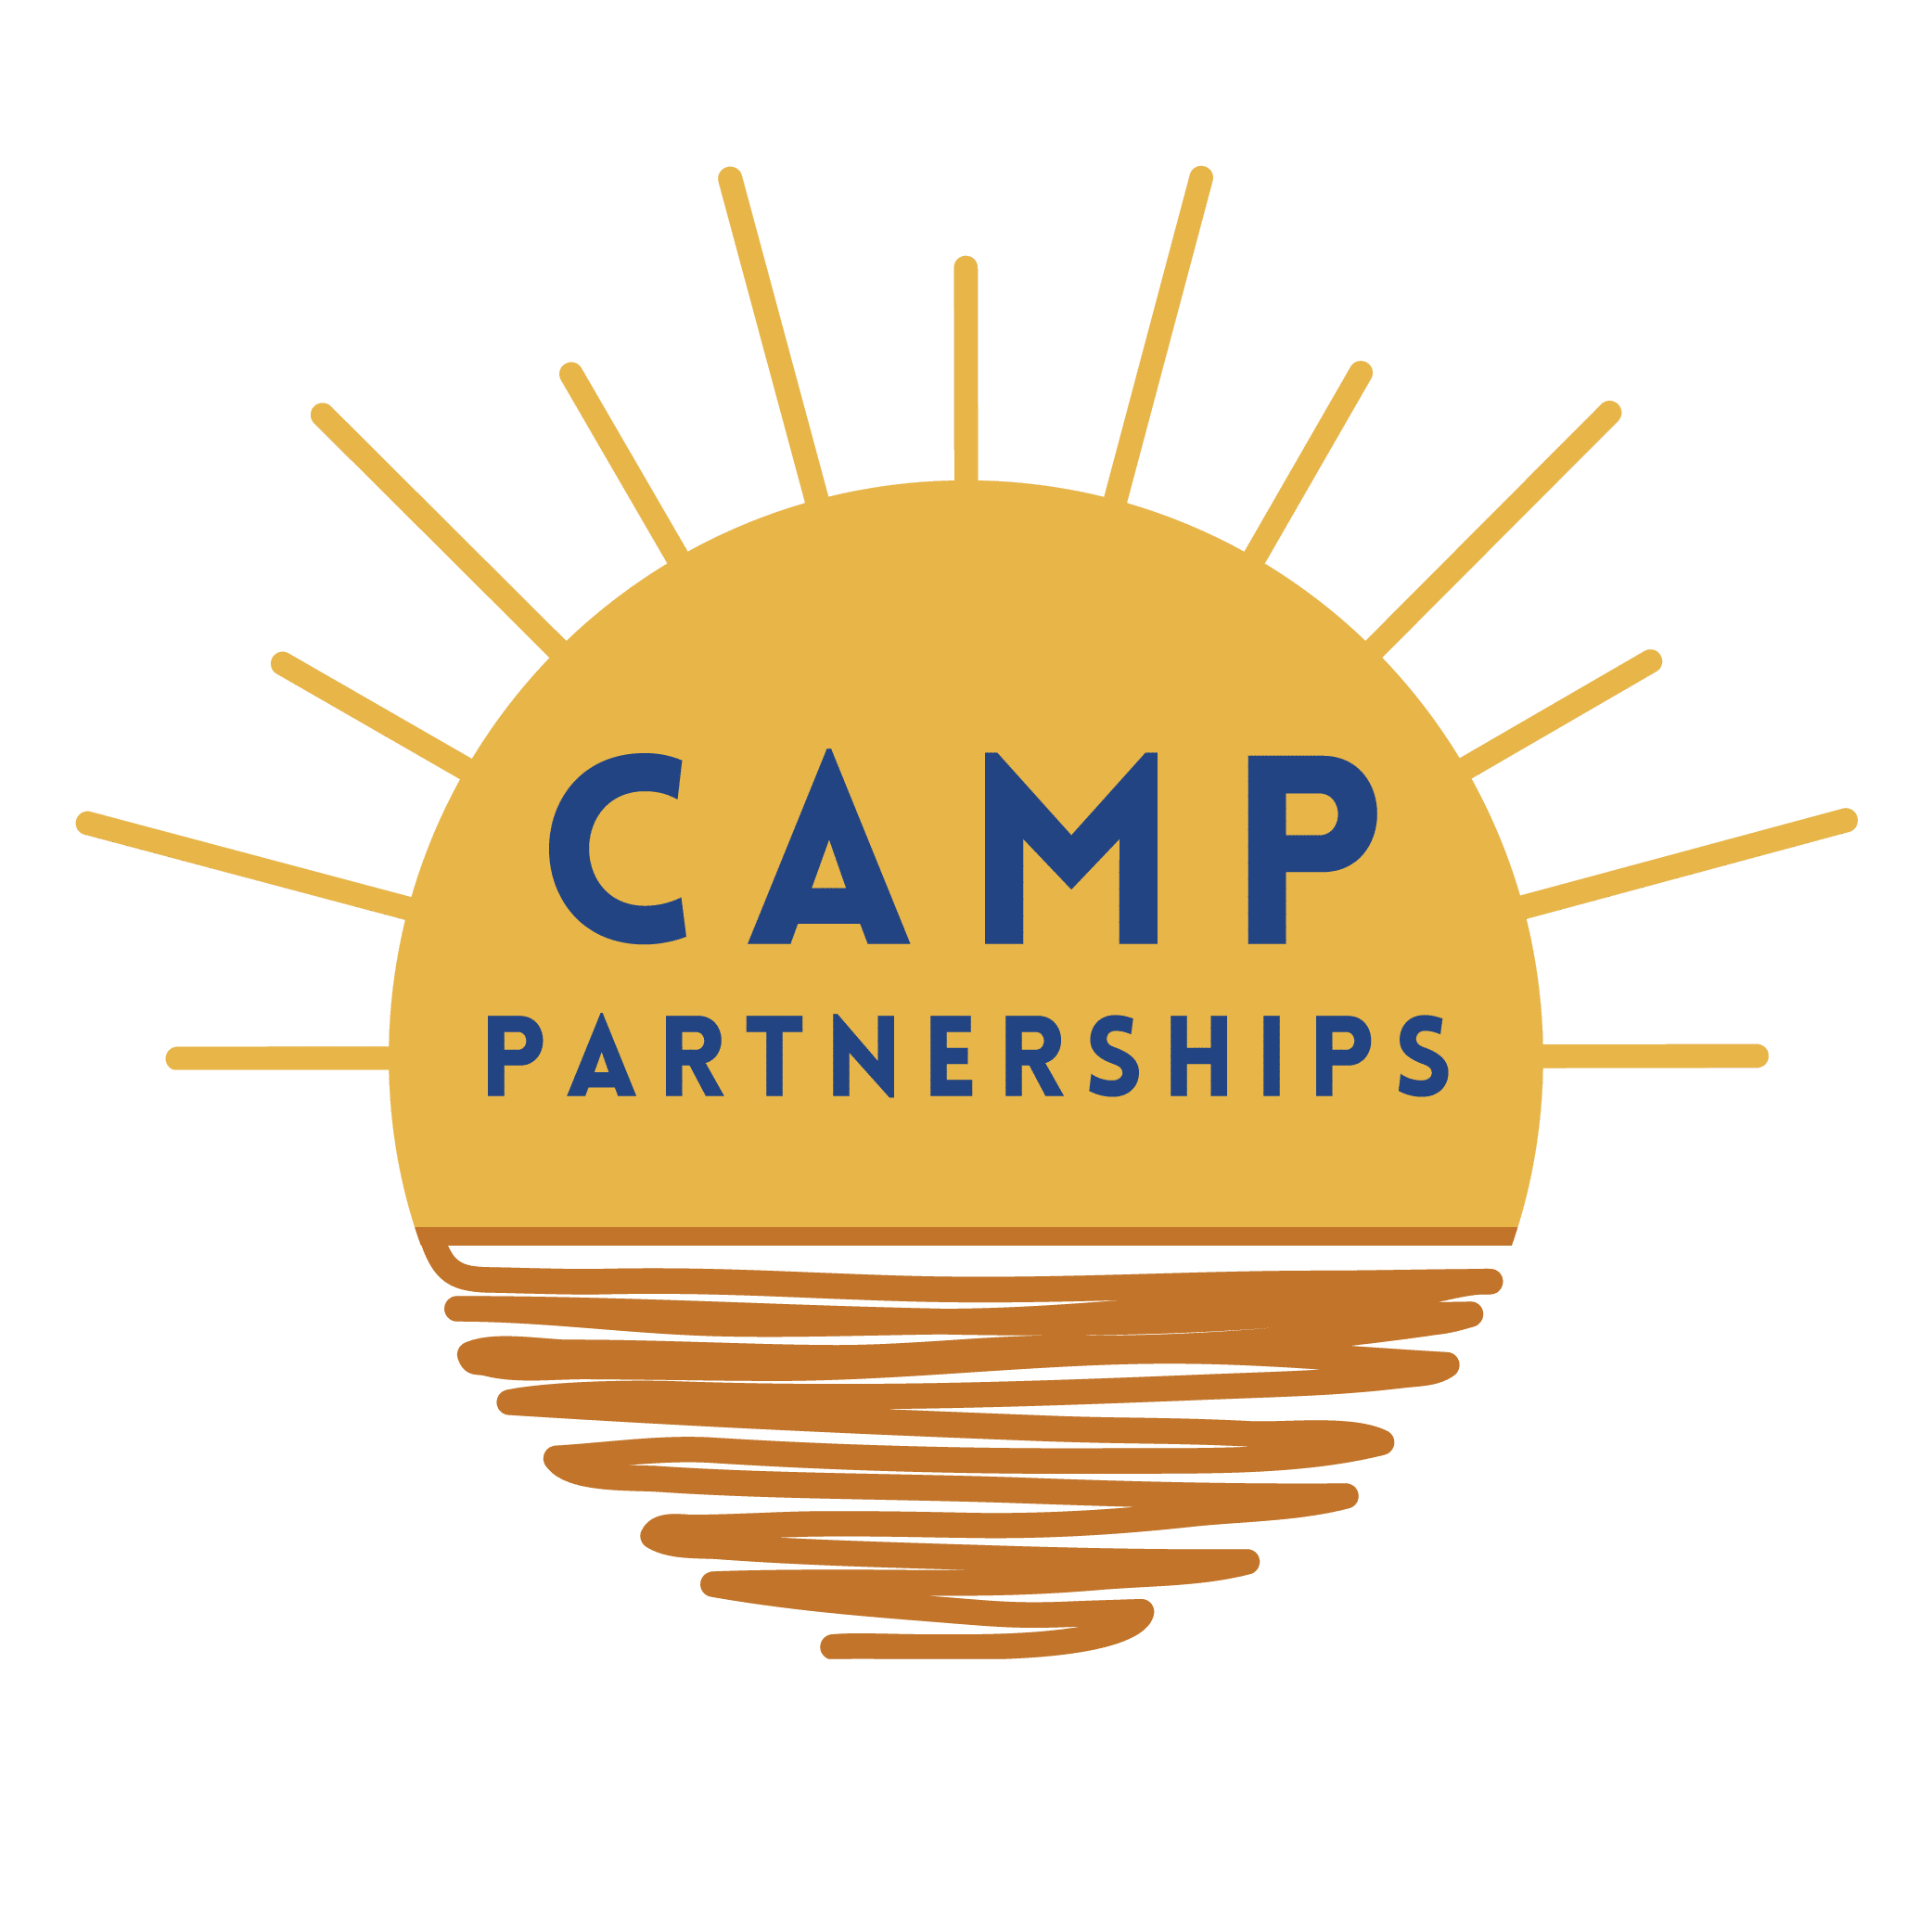 Camp Partnerships Image